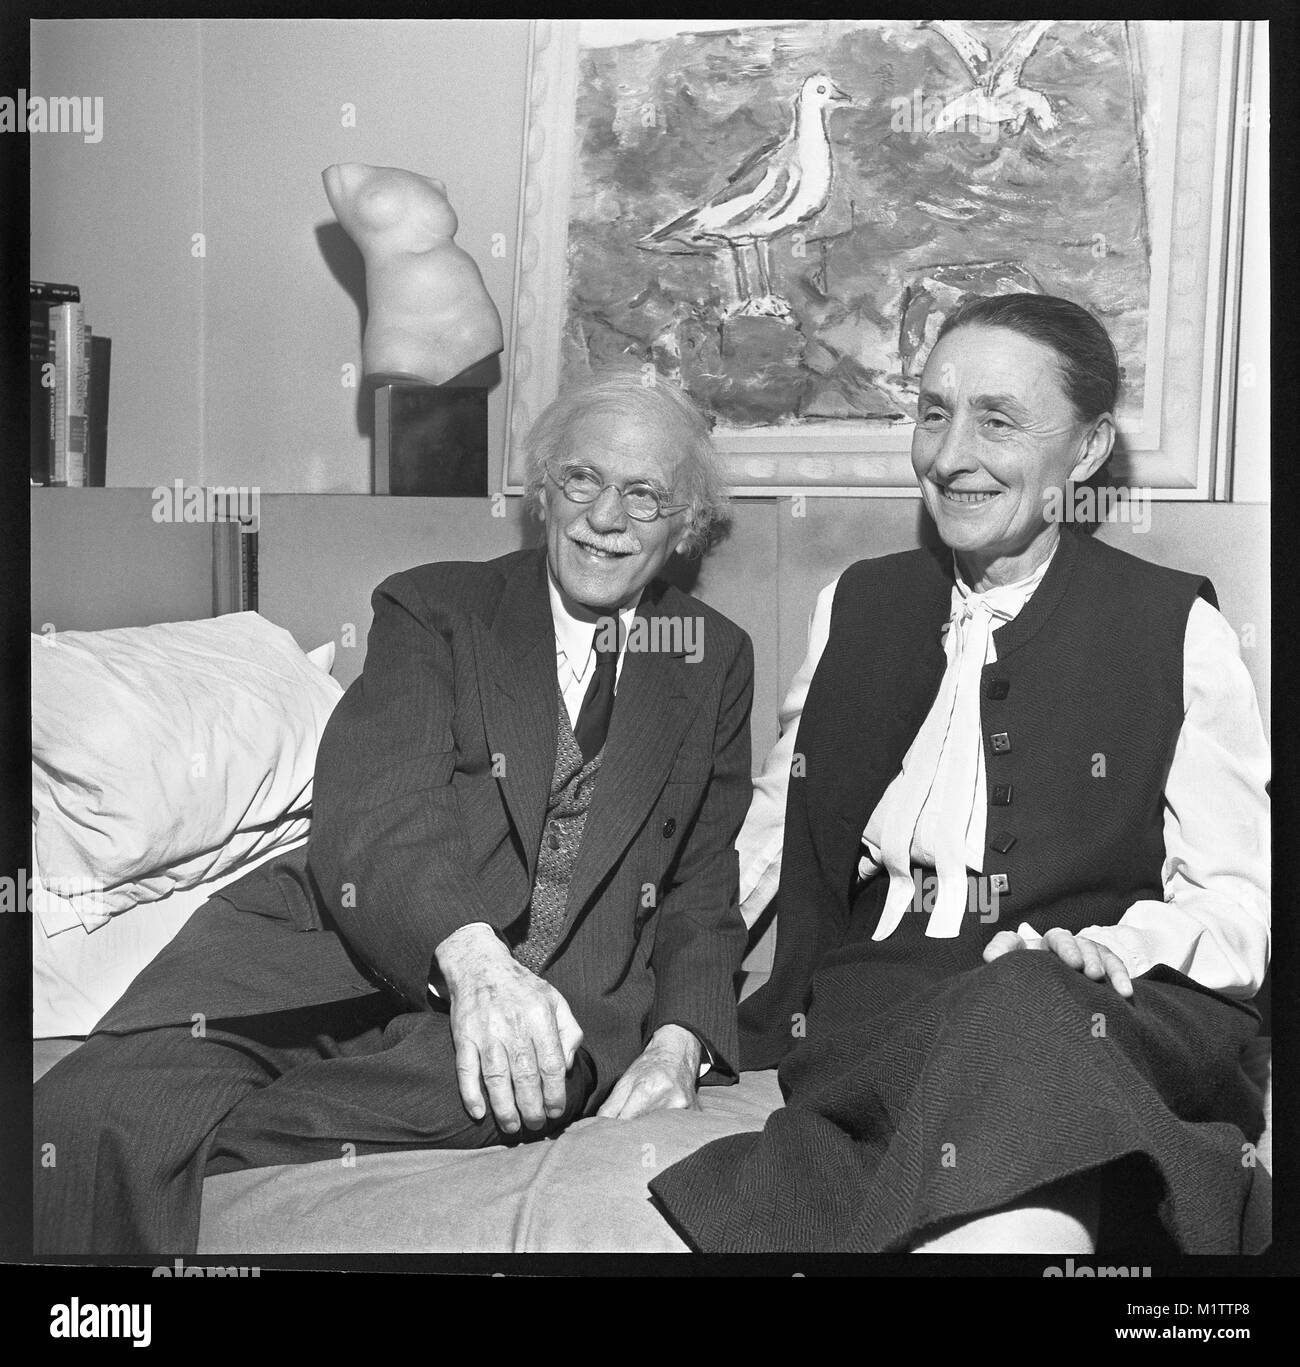 Fotograf Alfred Stieglitz und Künstler Georgia O’Keeffe in New York City. Das Ehepaar ist 1942 bei einer Ausstellung von John Marin an American Place. Kunstwerk an der Wand ist „Sea and Möwen“ von Marin. Stockfoto